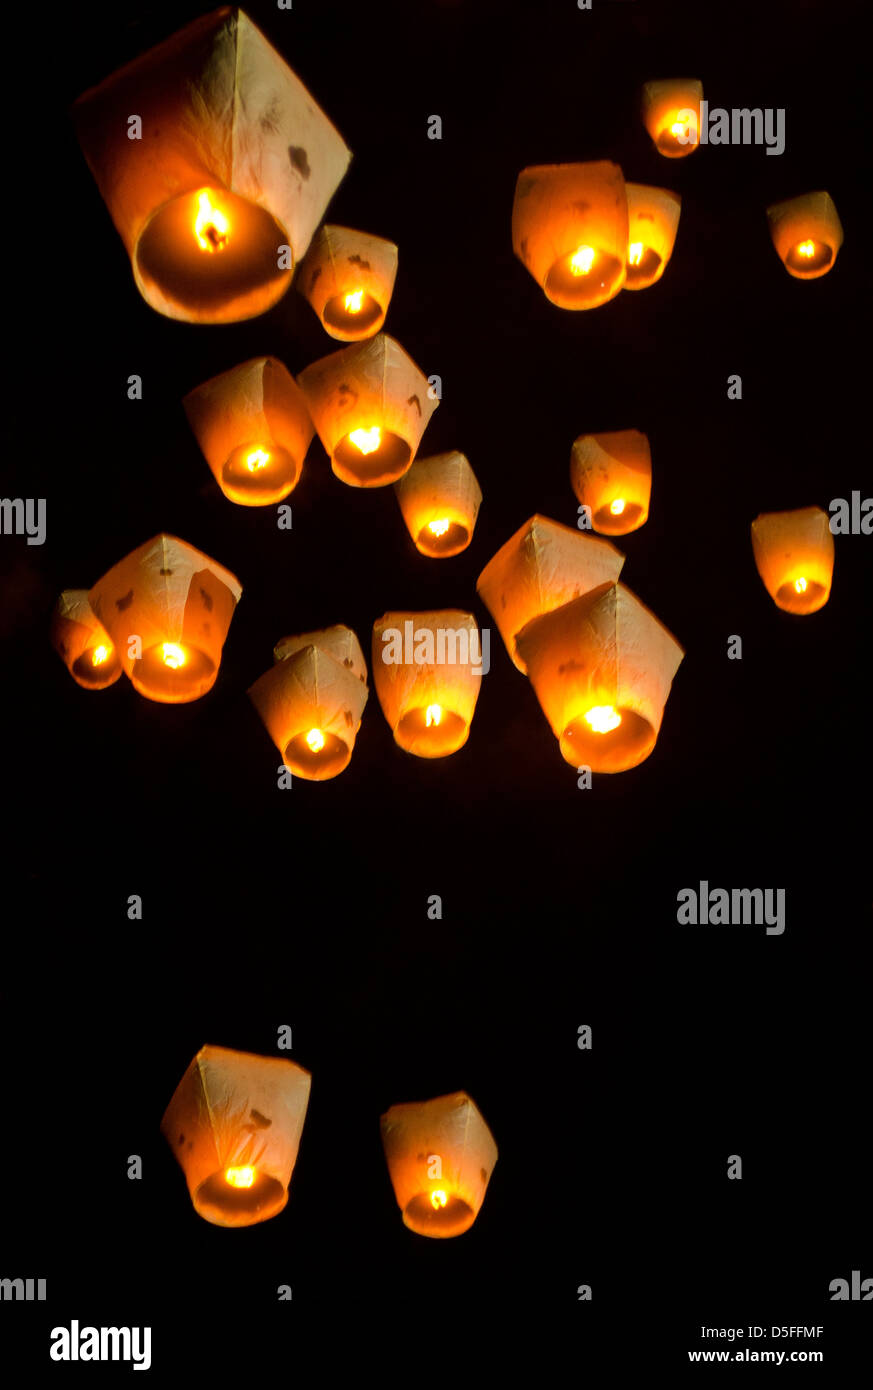 Lanterne volanti immagini e fotografie stock ad alta risoluzione - Alamy